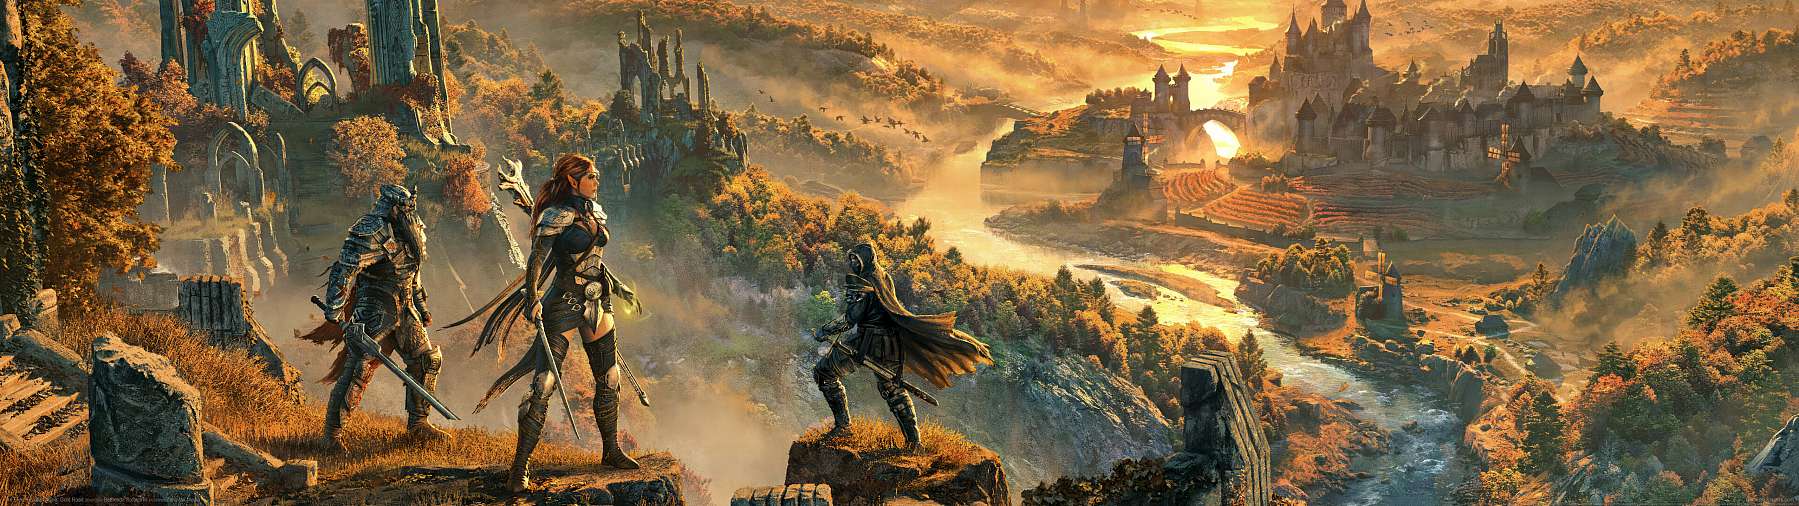 The Elder Scrolls Online: Gold Road superwide fond d'cran 01